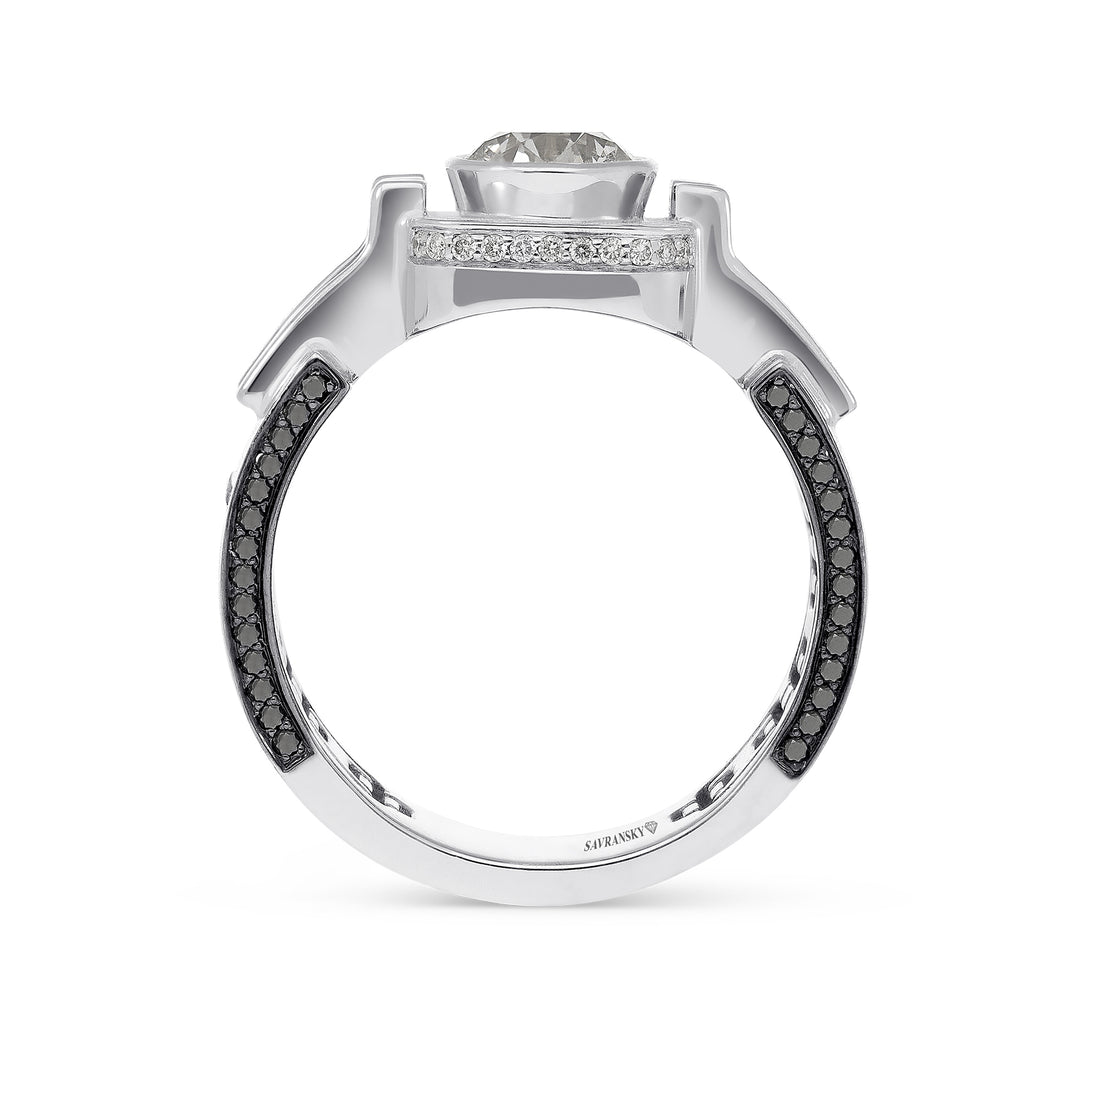 Men's White Diamond Ring - 2.05 Carat